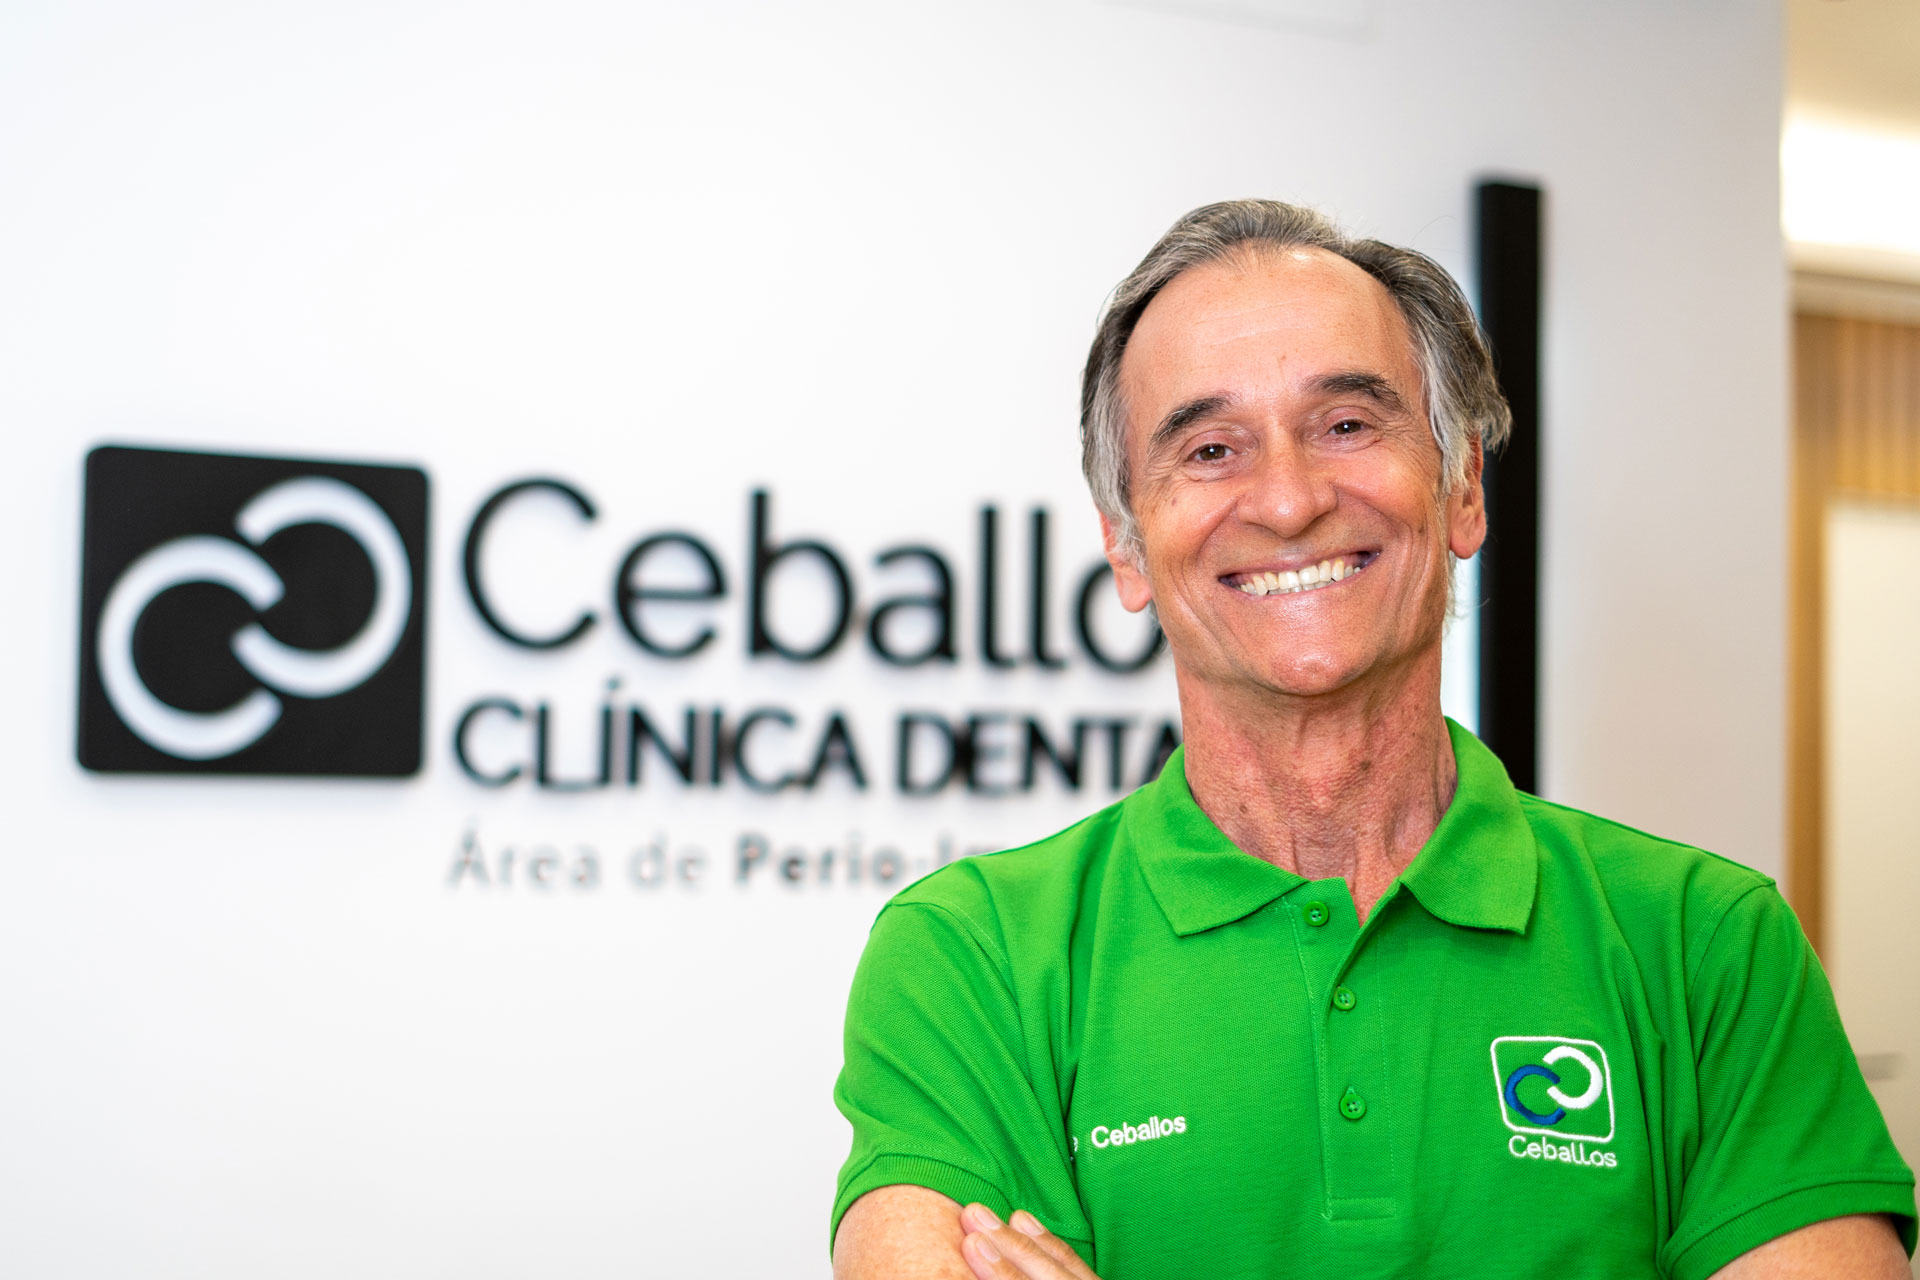 Dr. José Ceballos